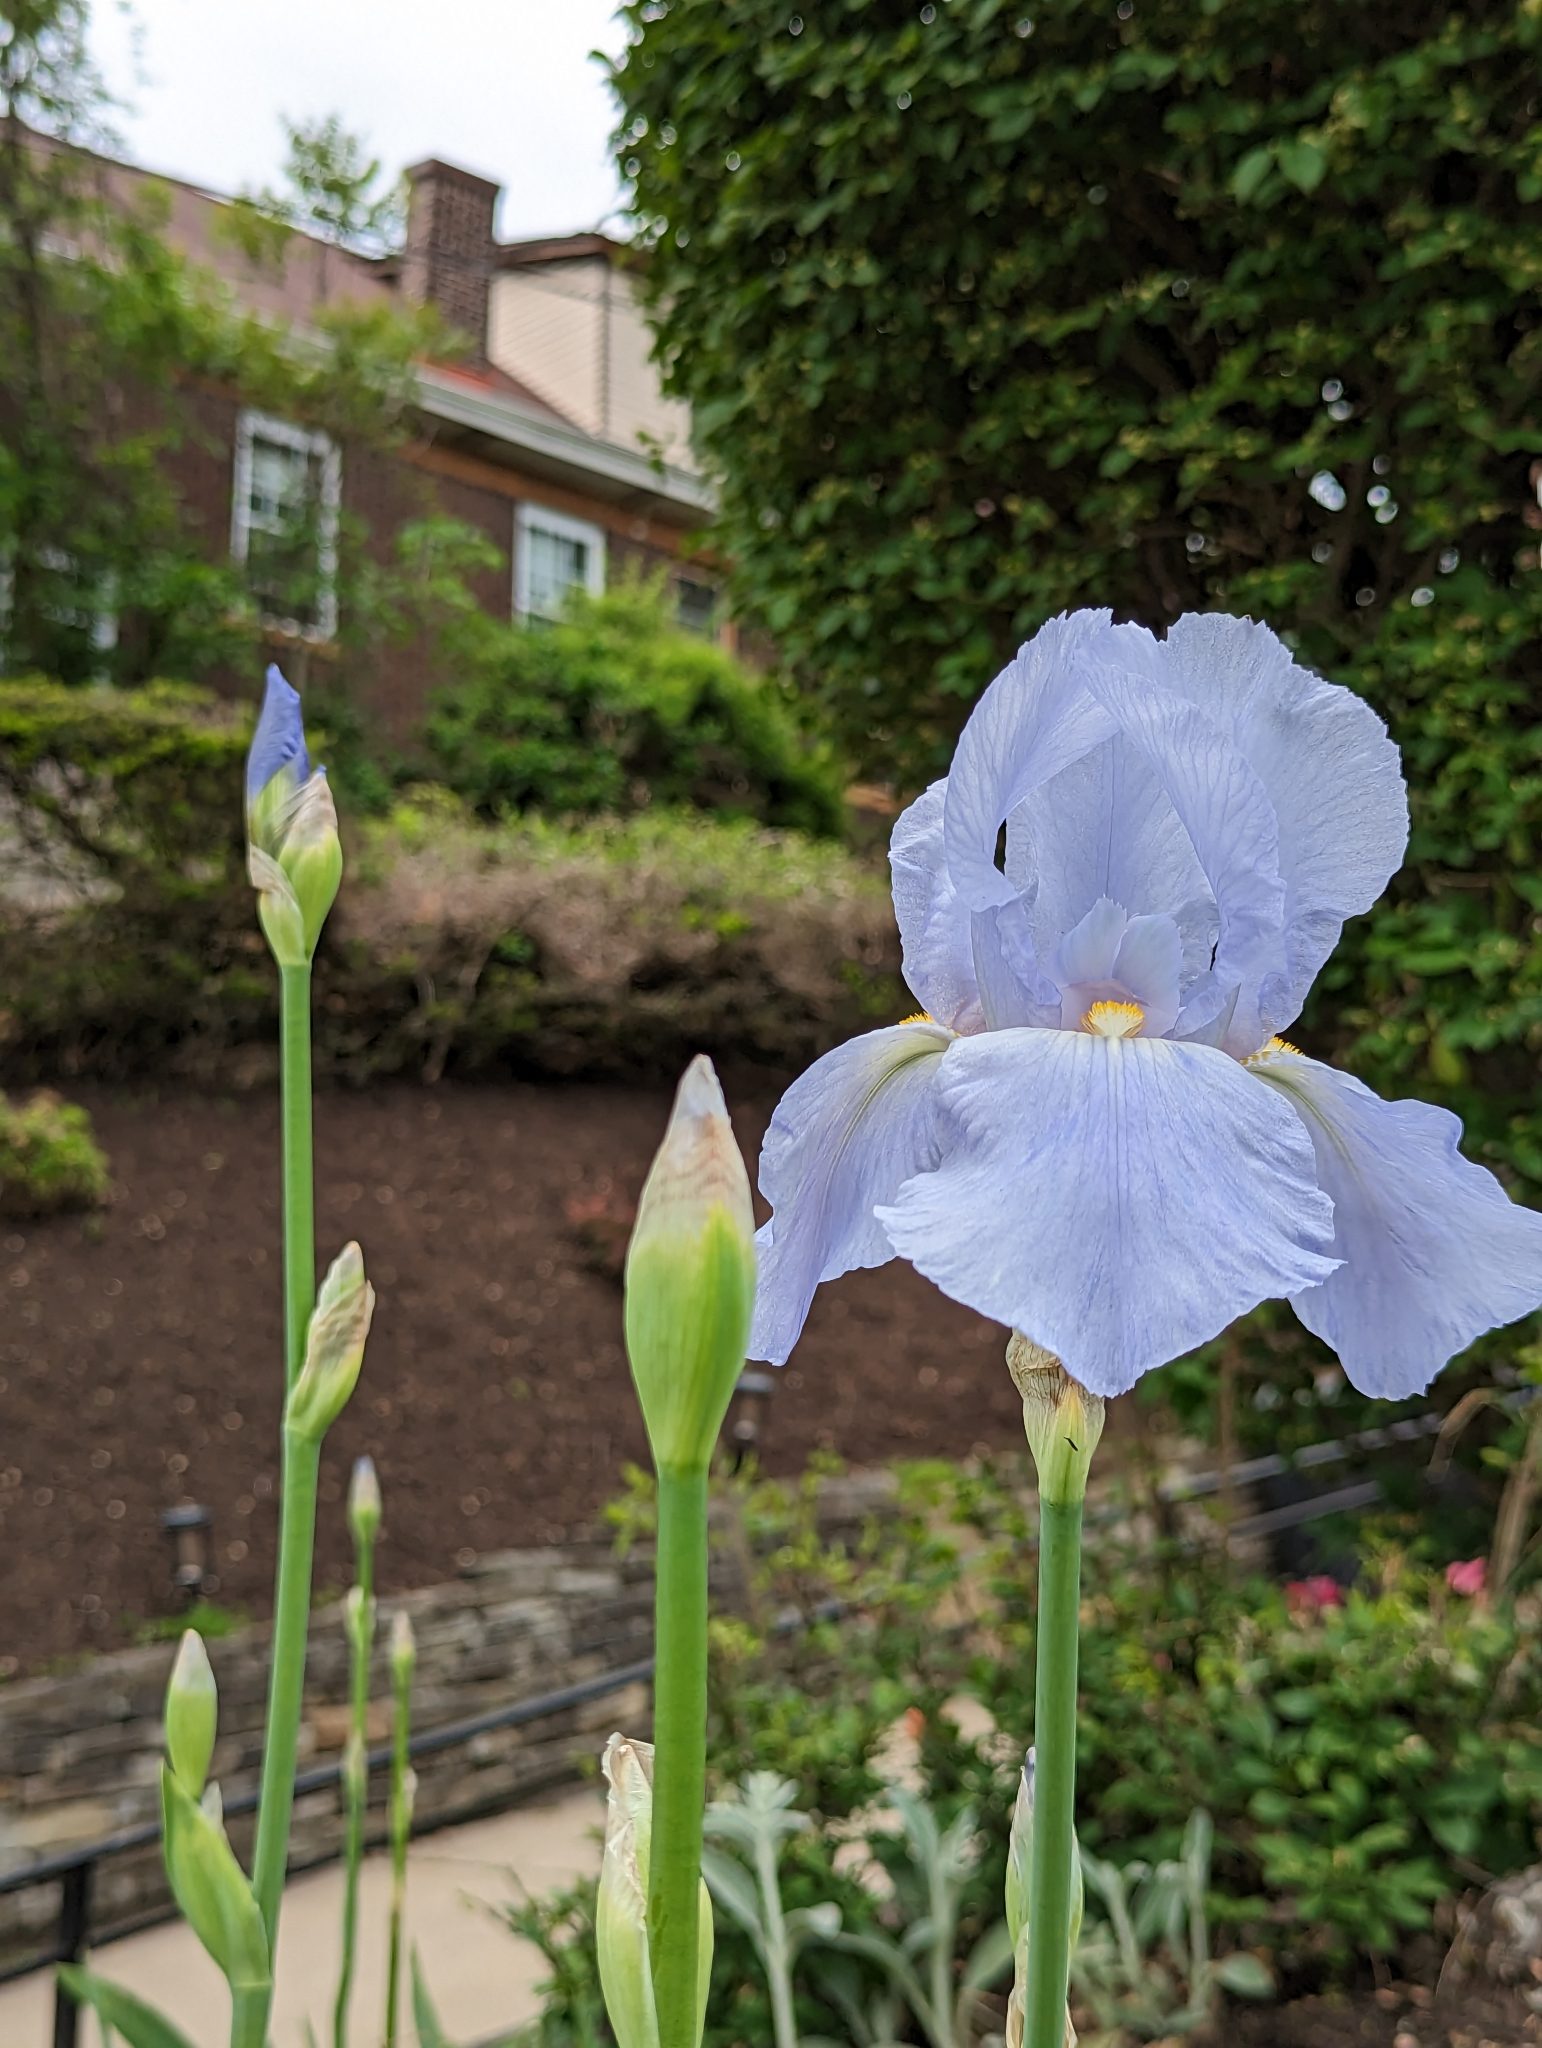 A blue Iris flower